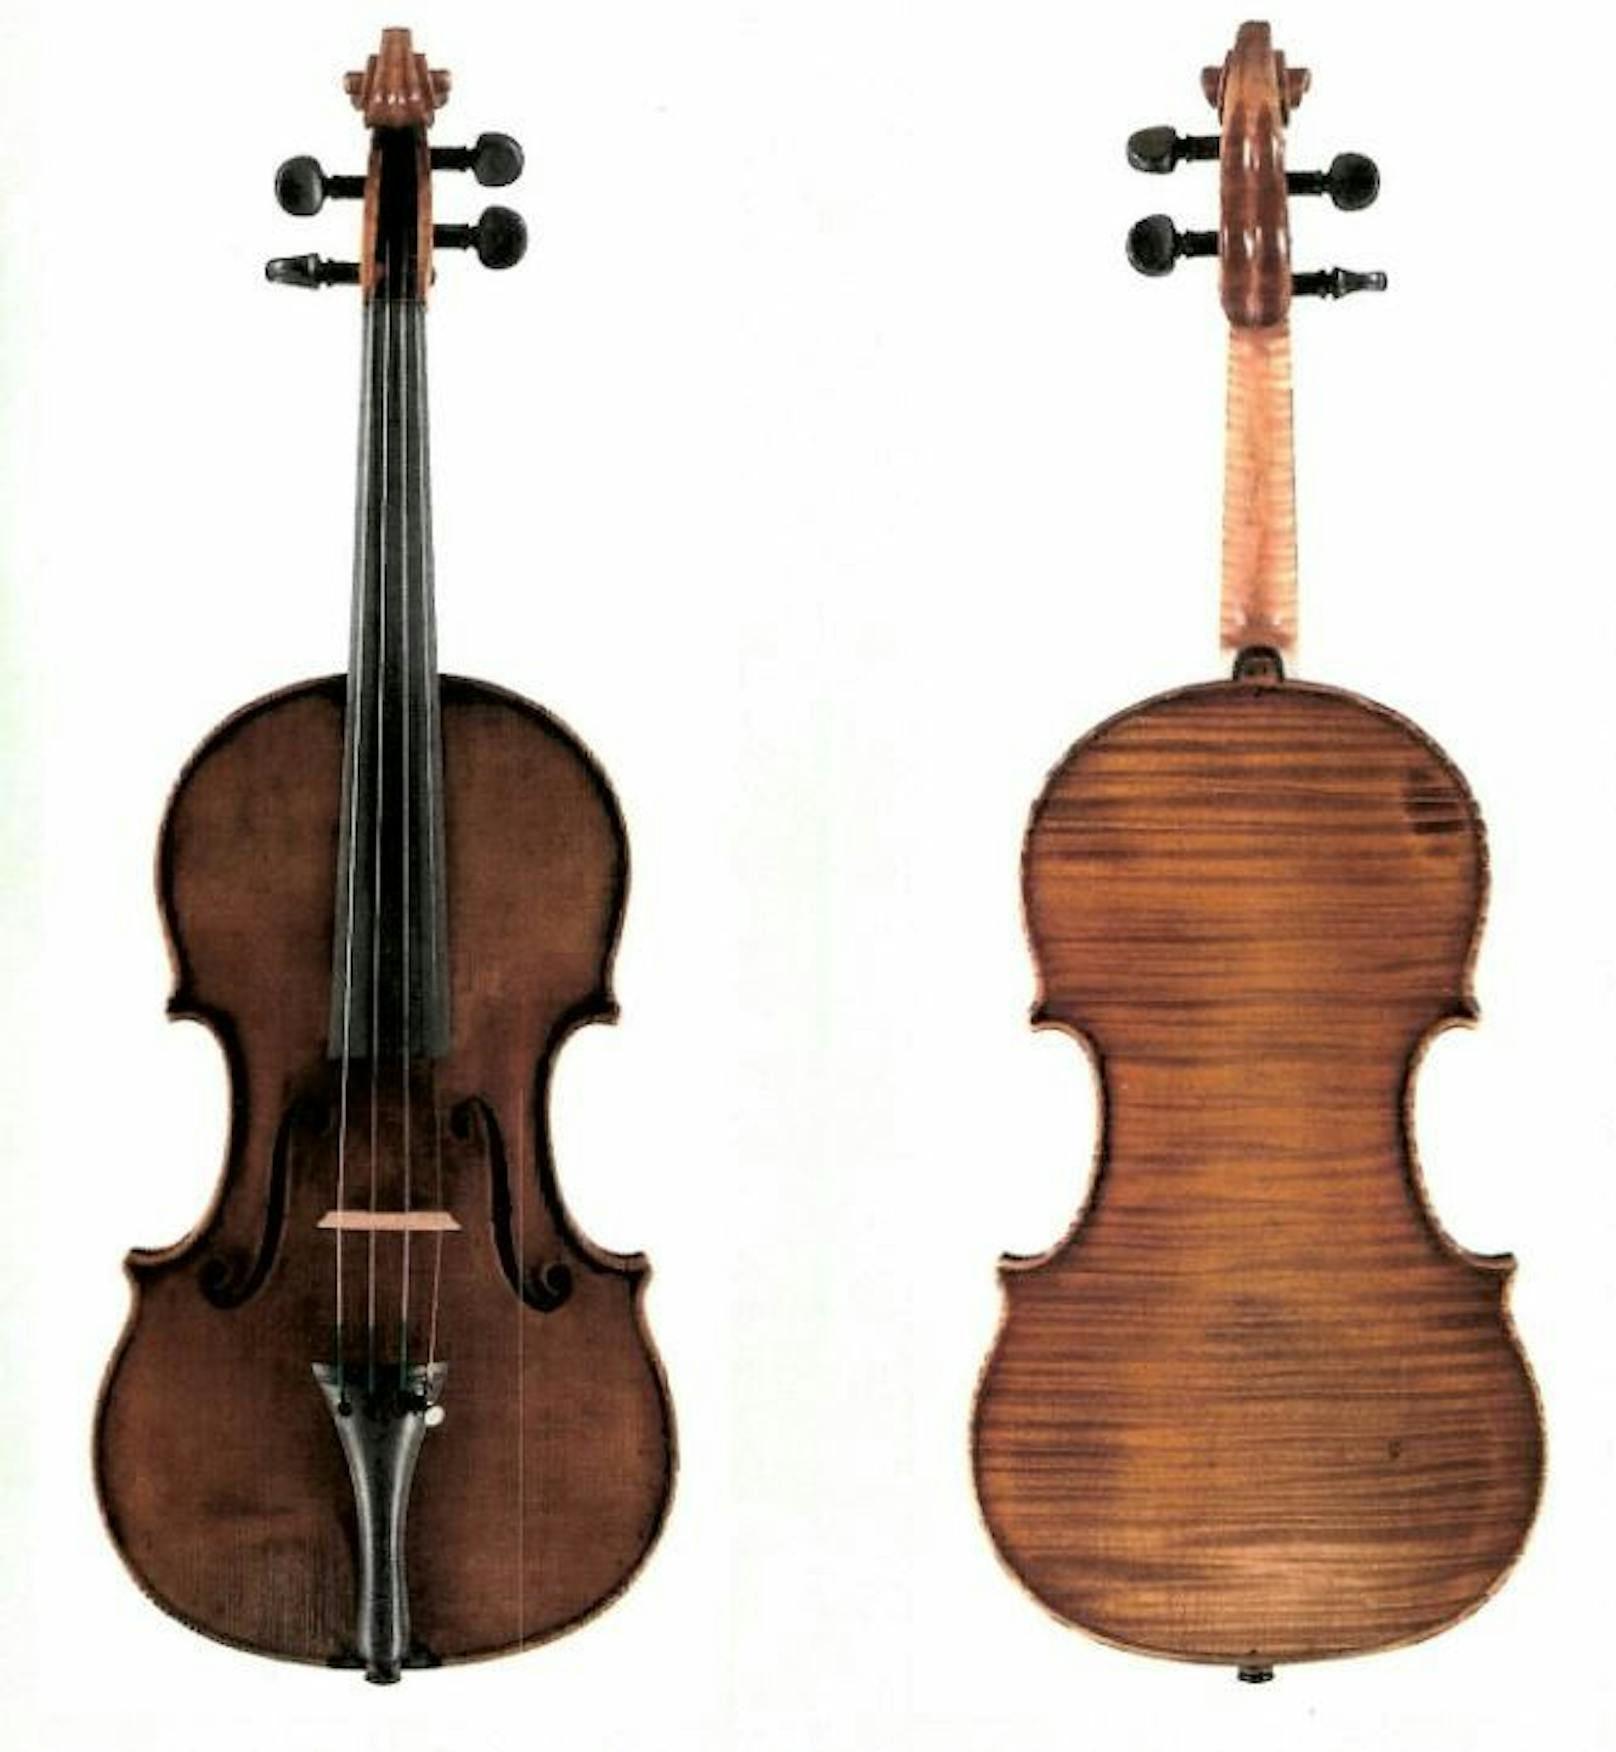 80.000 Euro teure Geige des Wiener Geigenbauers Gabriel Lemböck wurde im Zug vergessen.